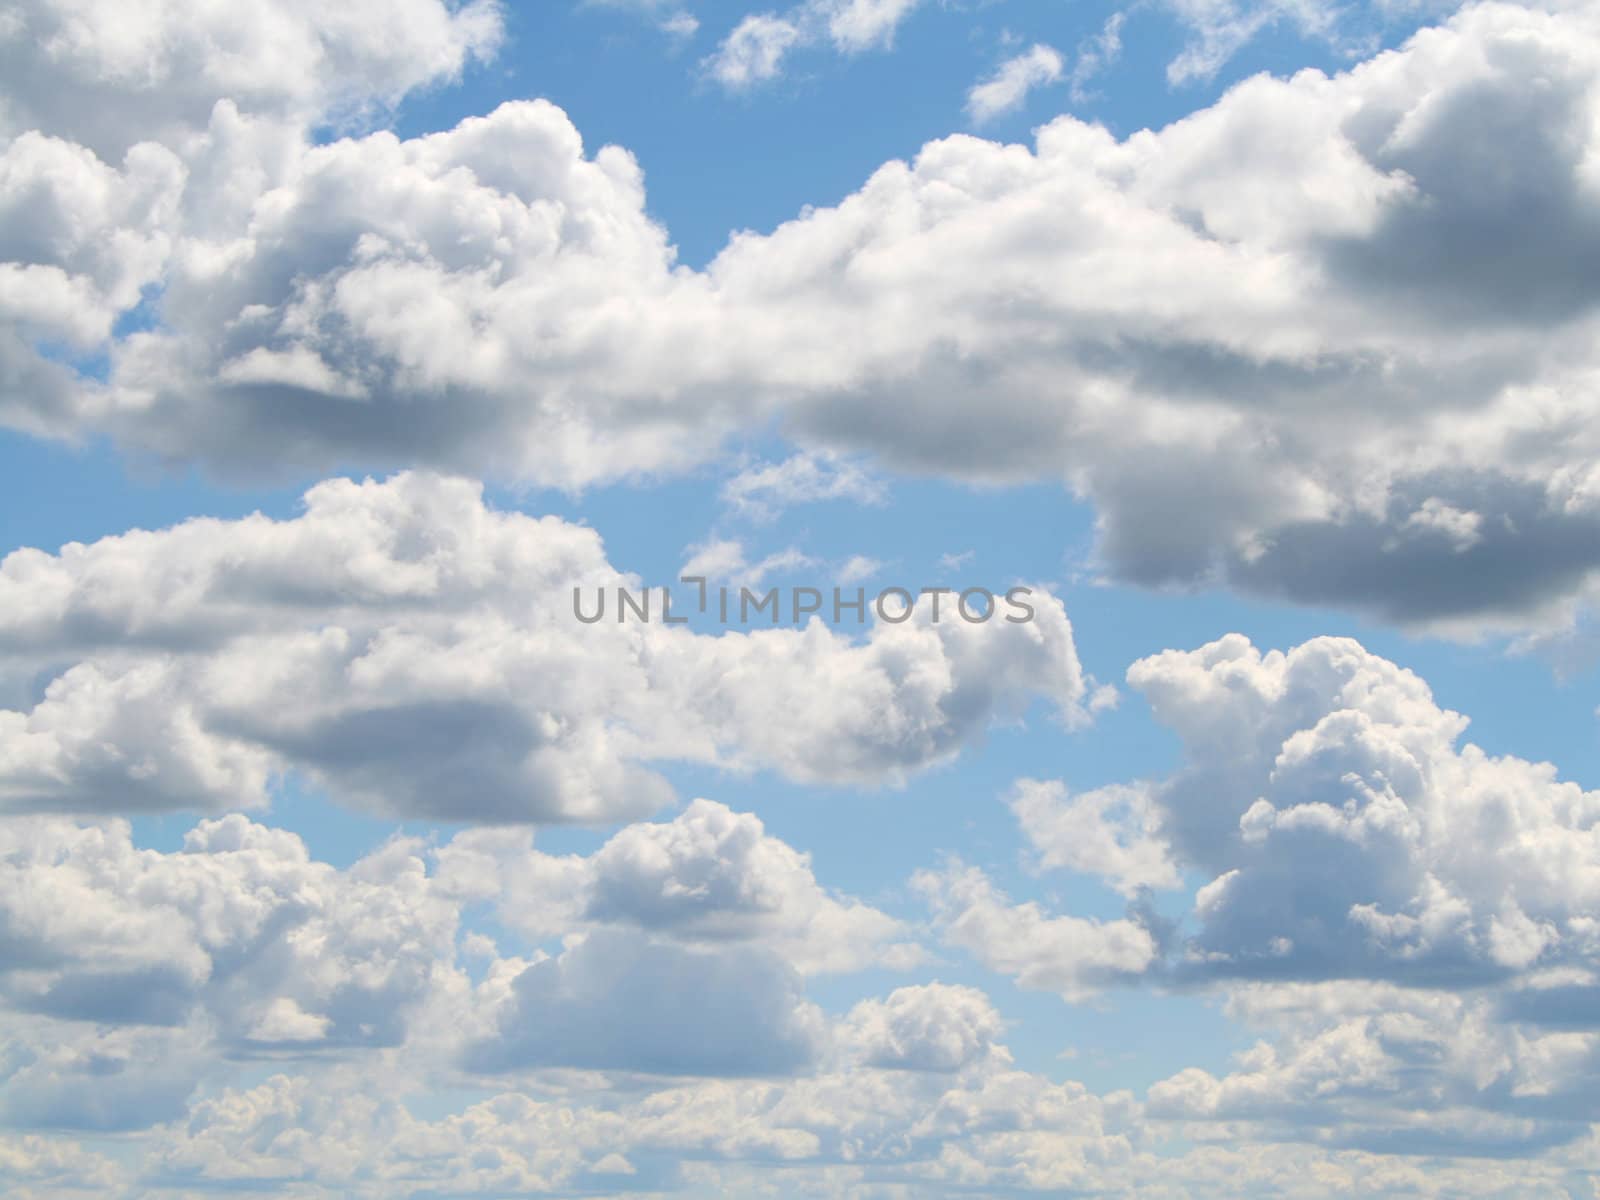 Clouds by Dan70